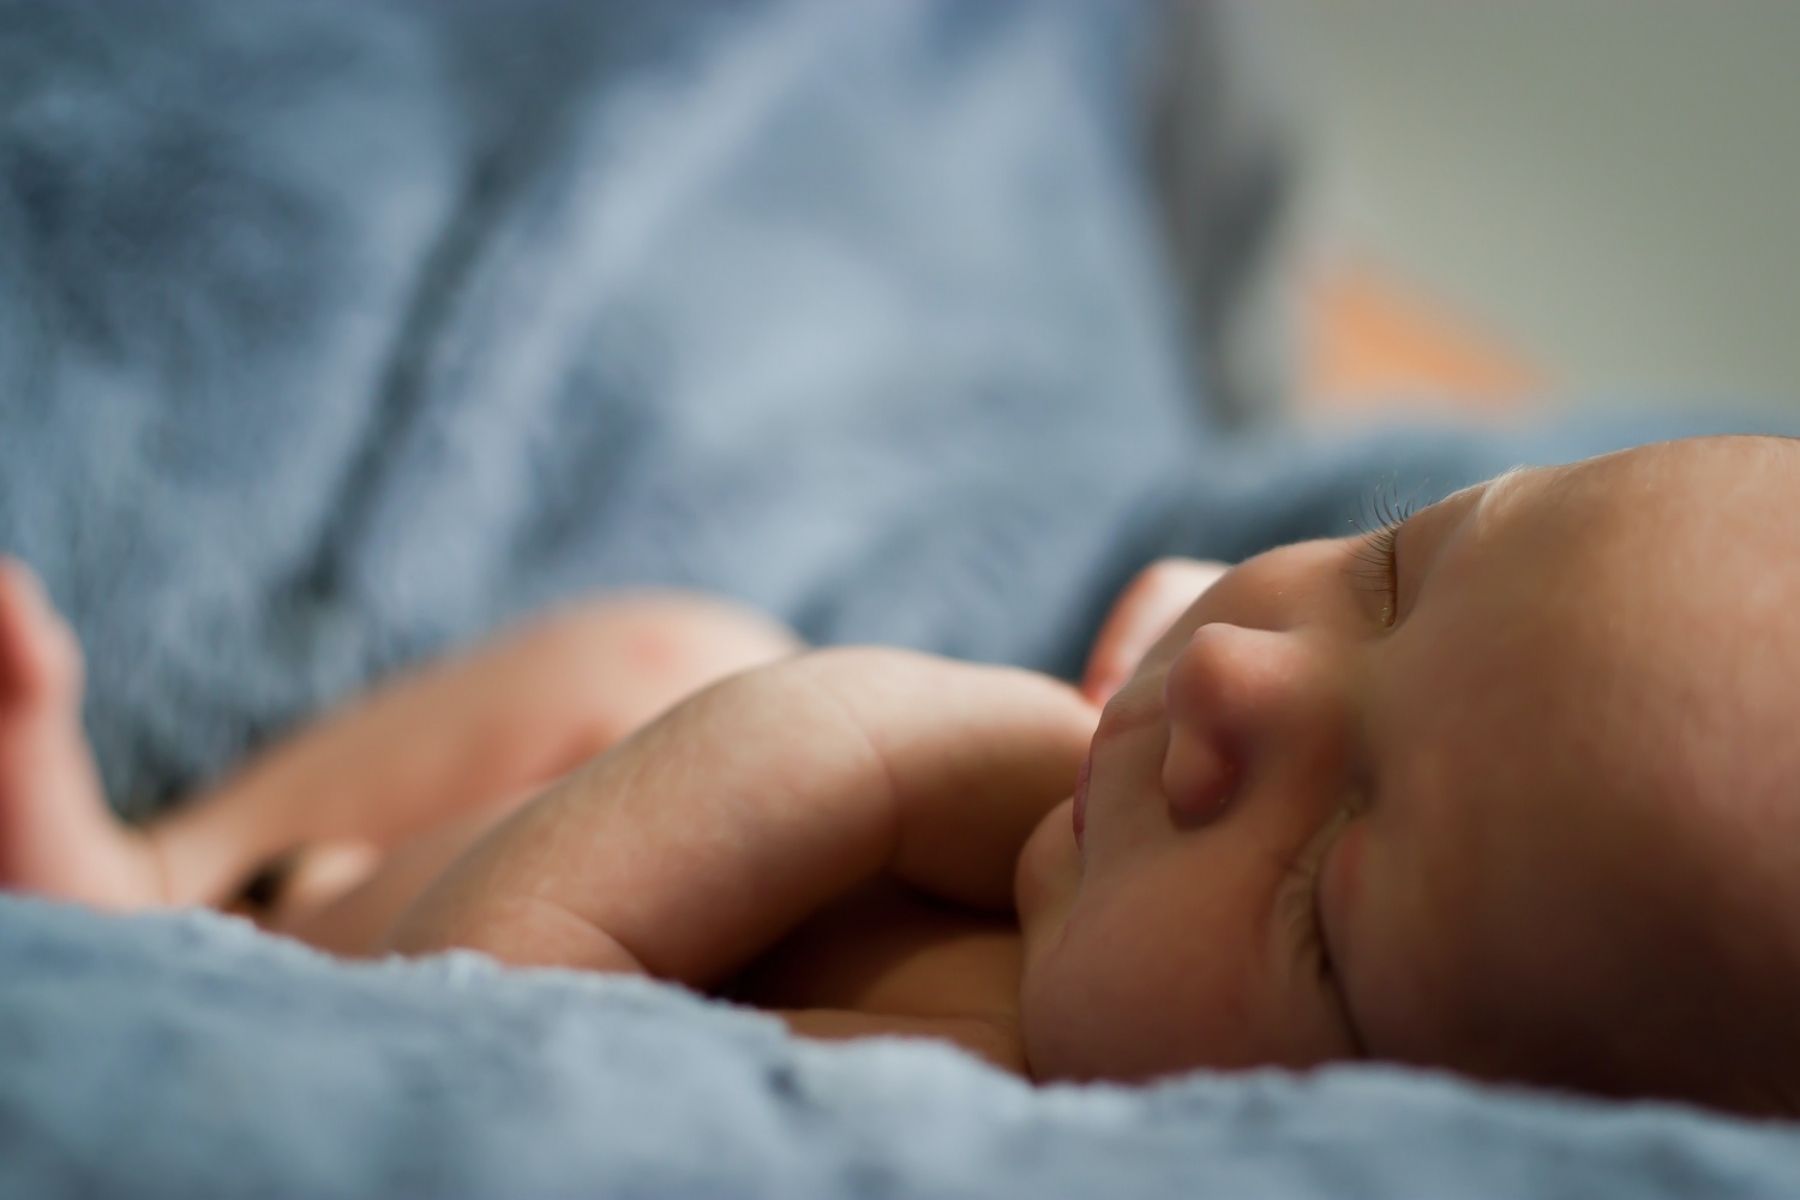 Σύνδρομο αιφνίδιου βρεφικού θανάτου: Ένζυμο στο αίμα των μωρών συνδέεται με αύξηση κινδύνου